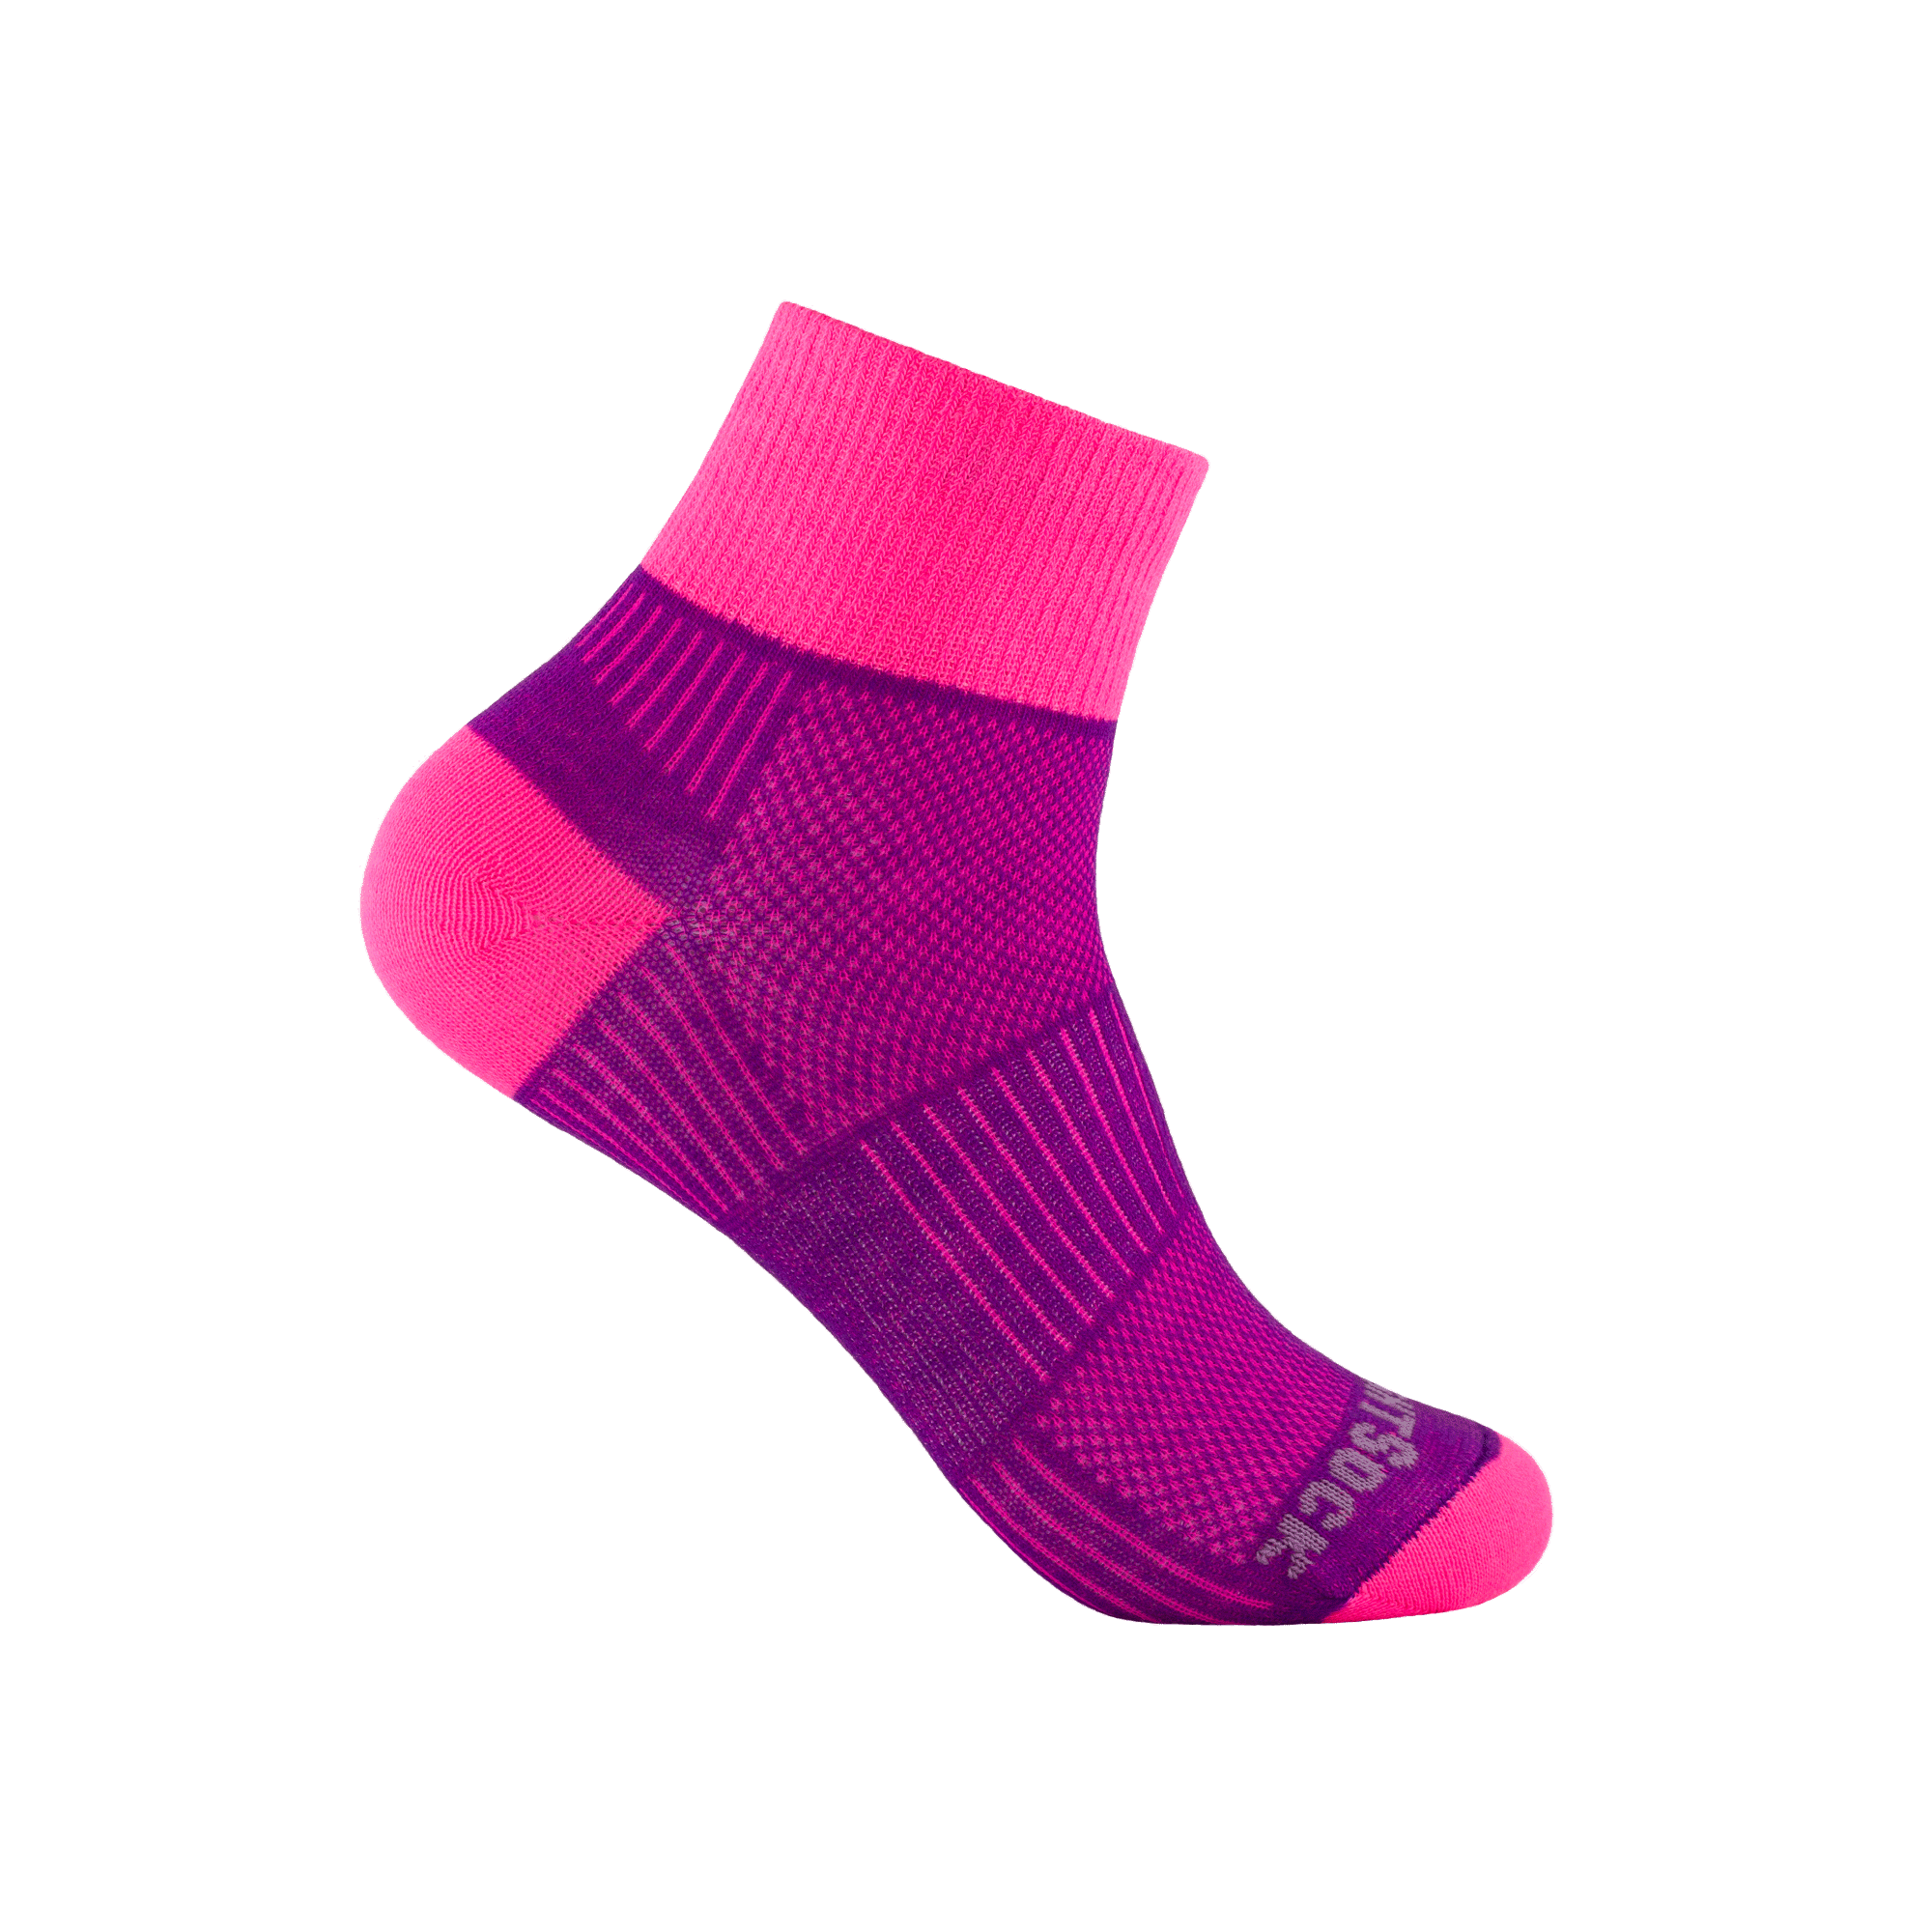 #farbe_plum-pink | WRIGHTSOCK doppellagige Anti-Blasen-Socken - COOLMESH II Quarter - pink